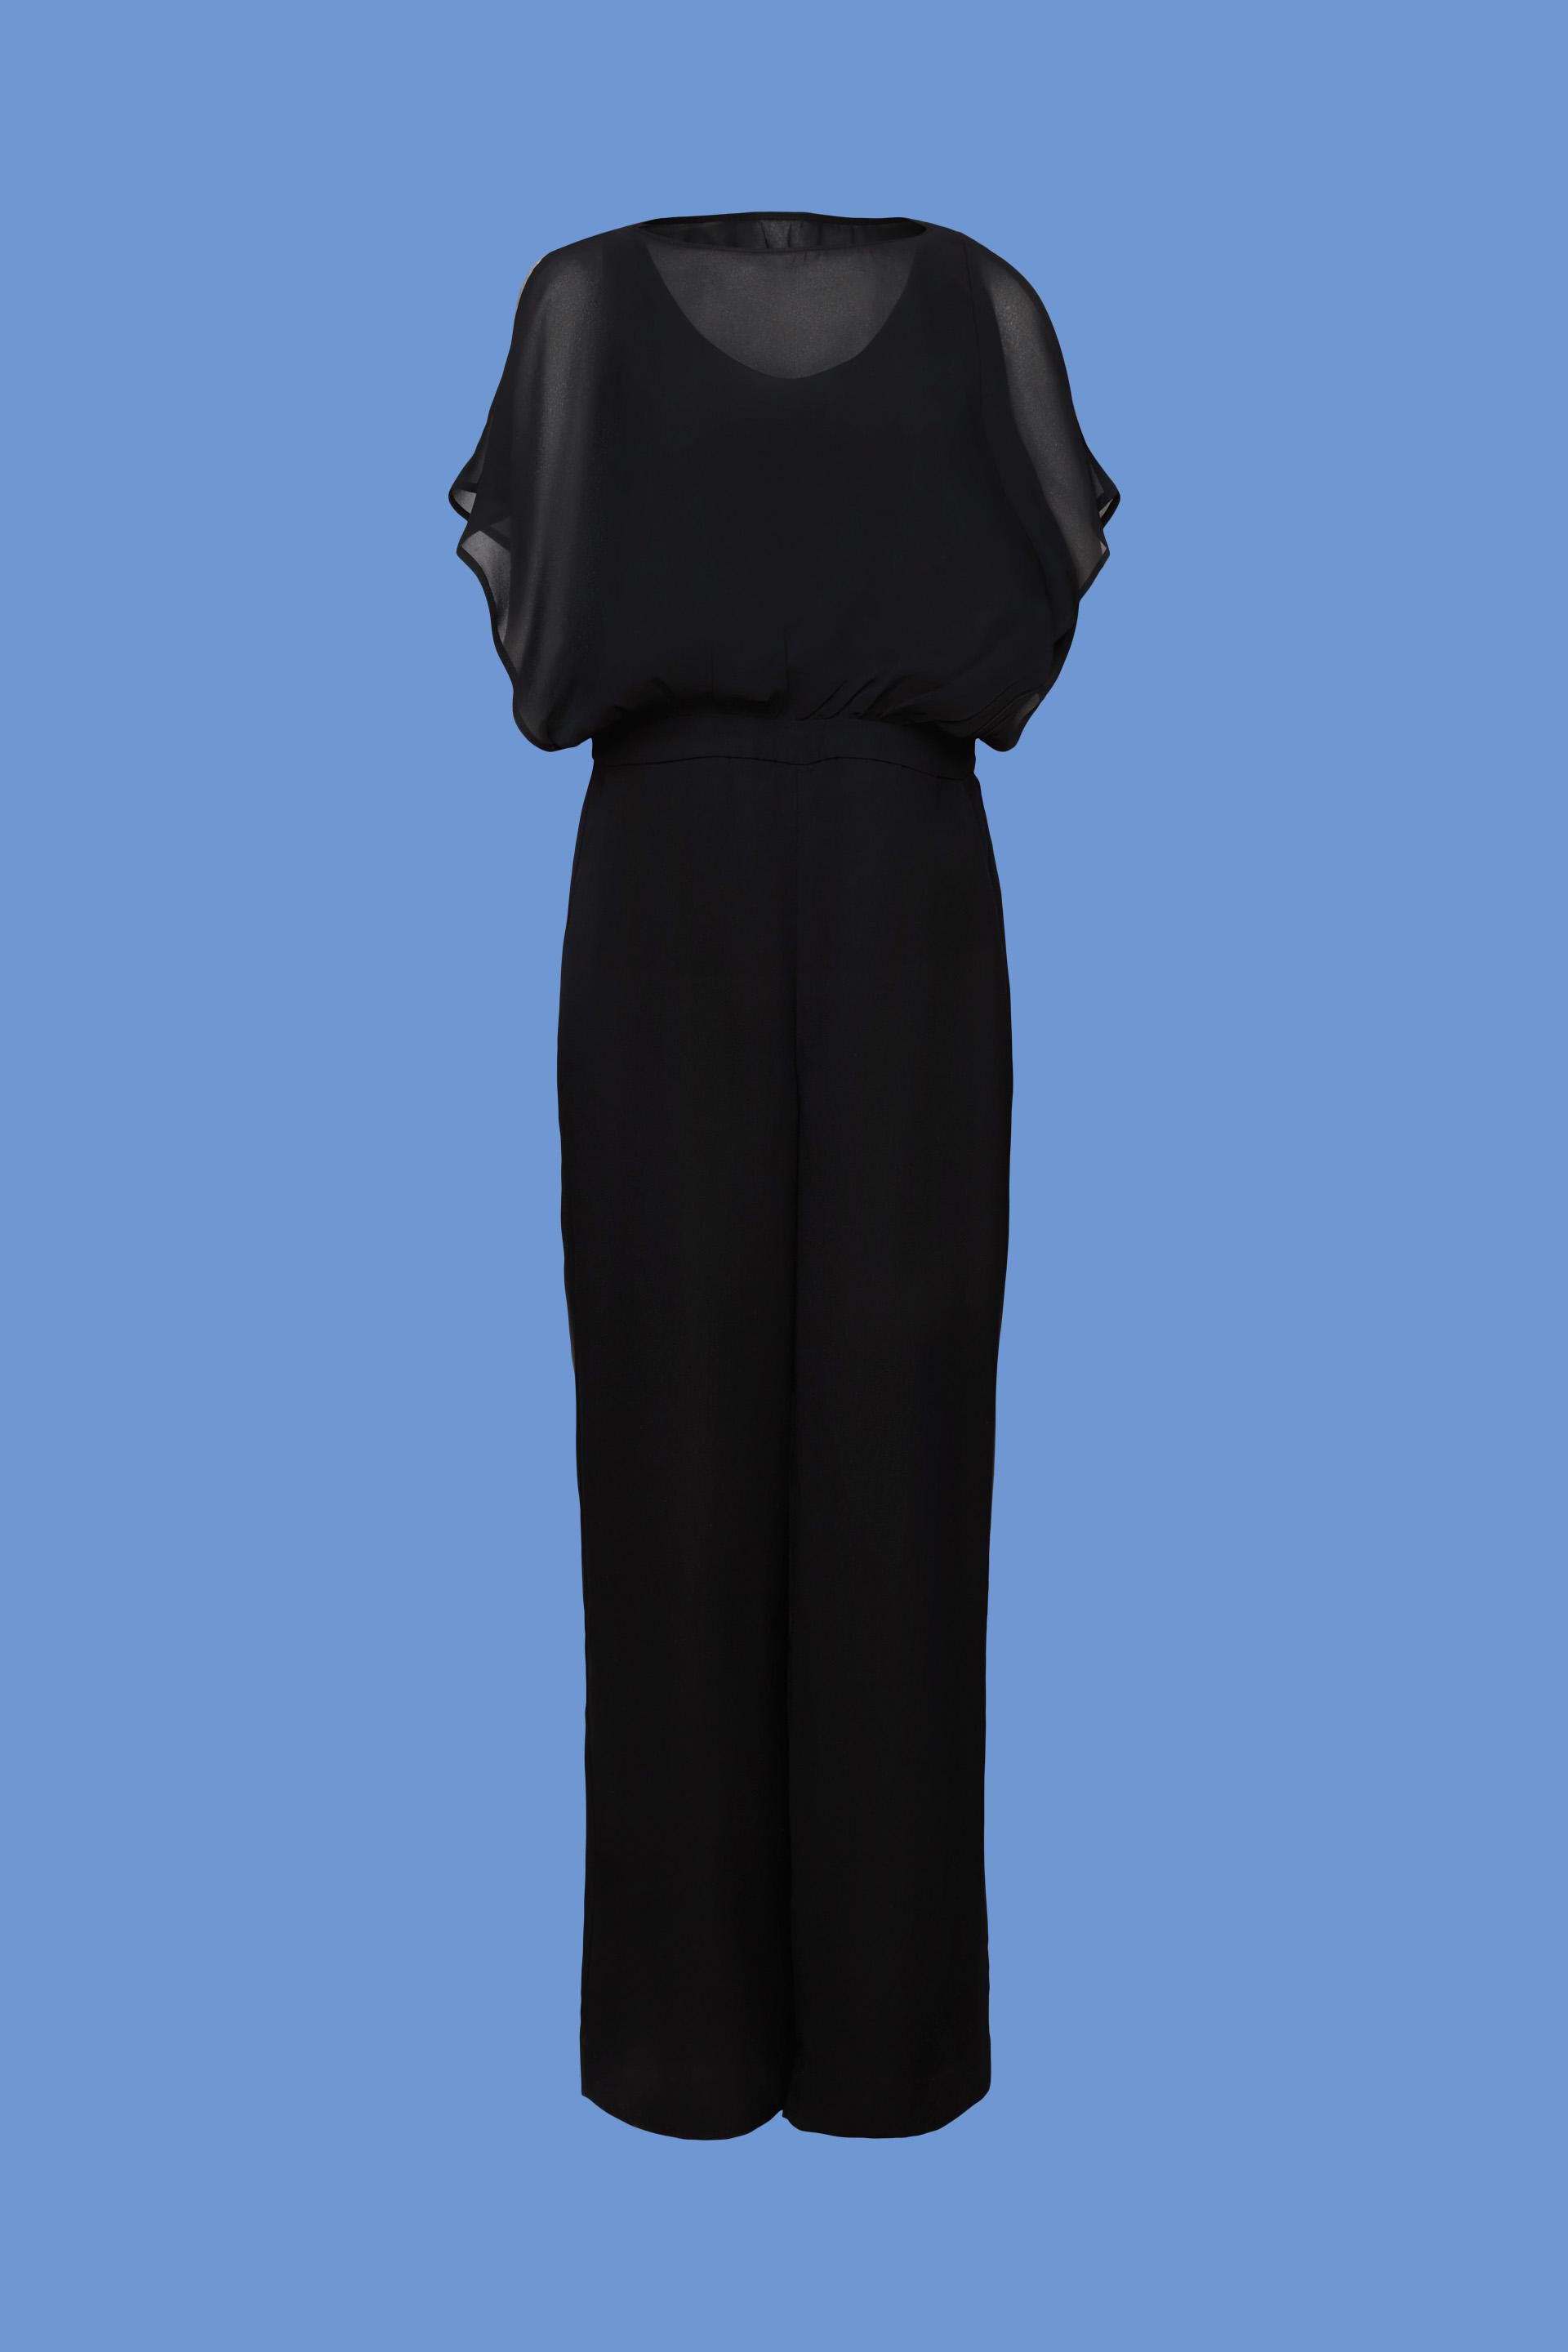 Extravagant Black Jumpsuit / Classy Sheer Jumpsuit With Underneath Little  Black Dress / Plus Size Jumpsuit TJ19 - Etsy